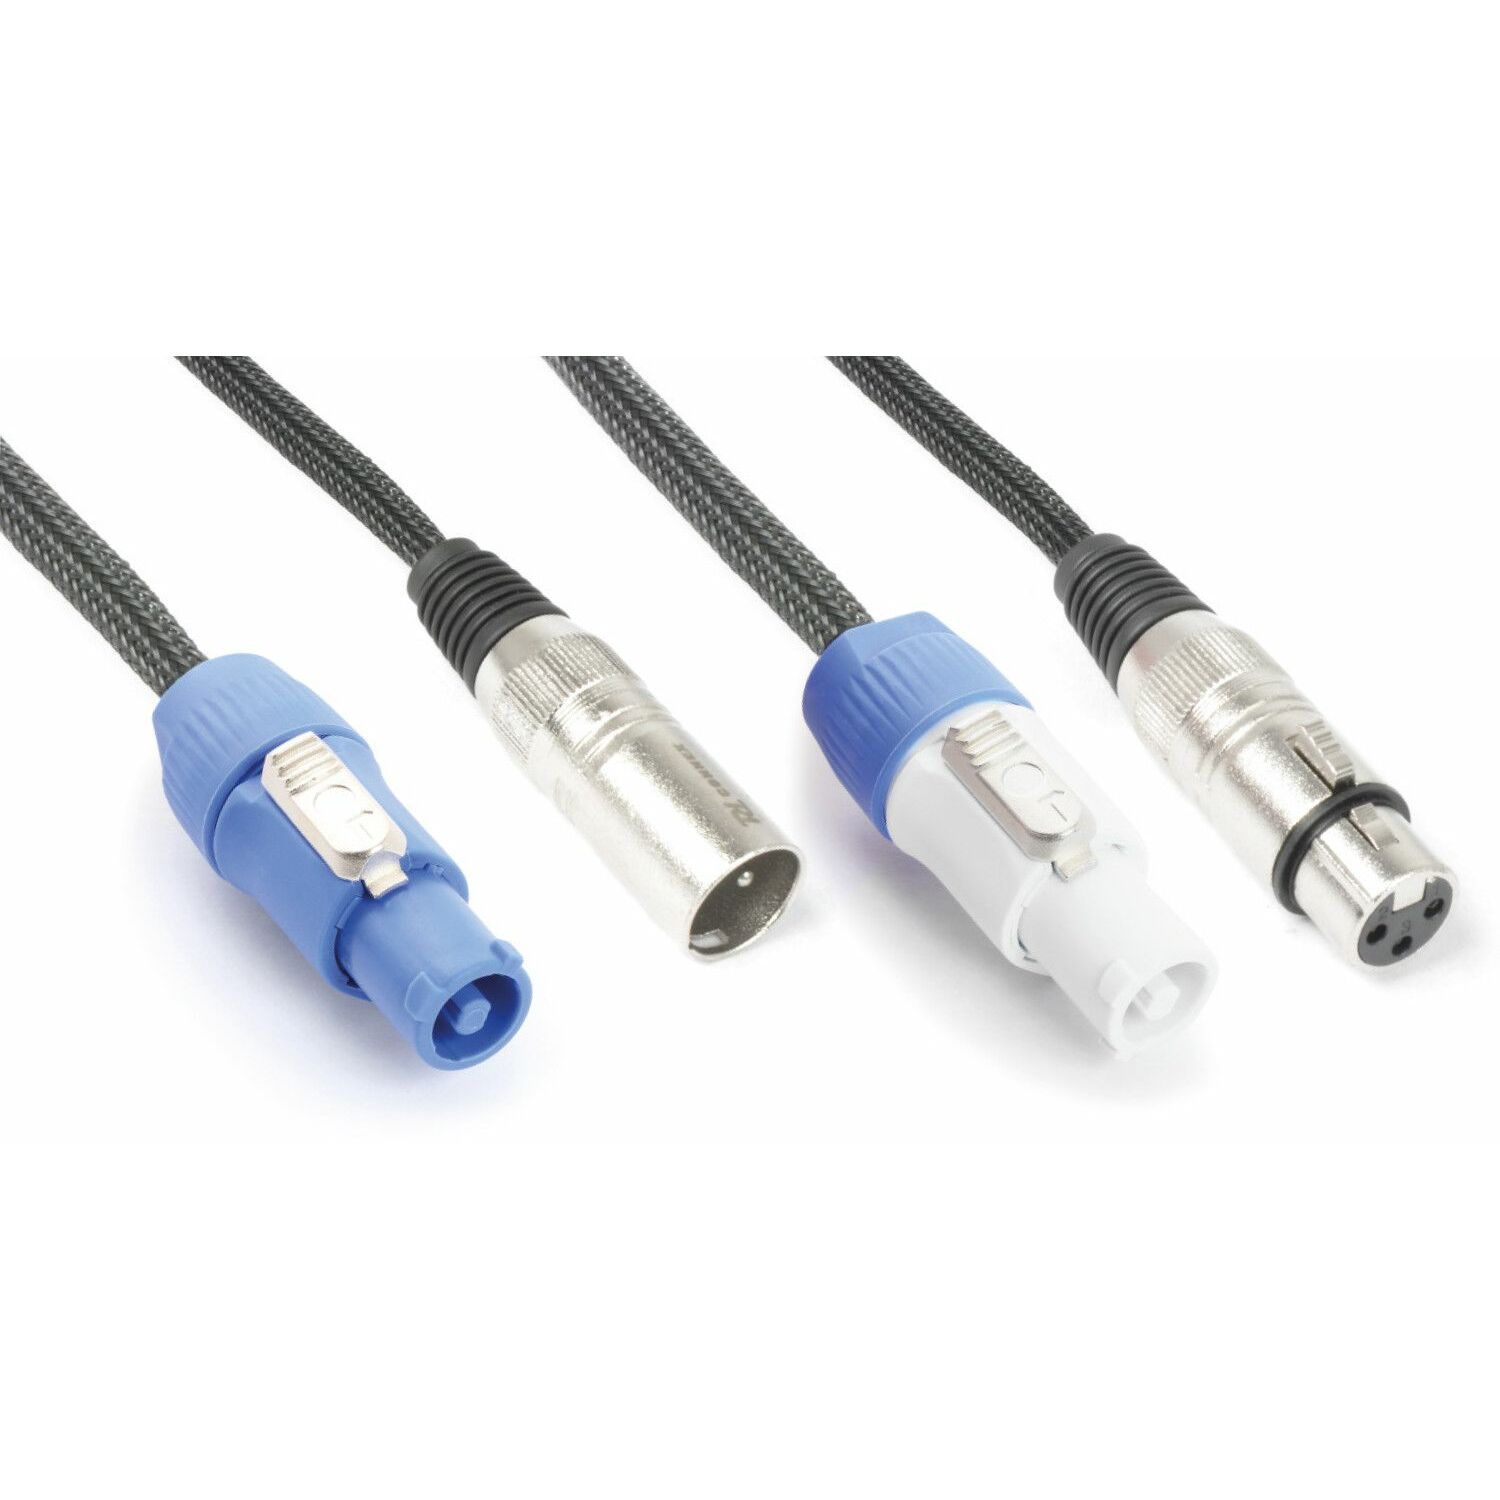 Combikabel – PD Connex ADP03 combikabel voor o.a. actieve speakers, 3 meter. Twee kabels in één!